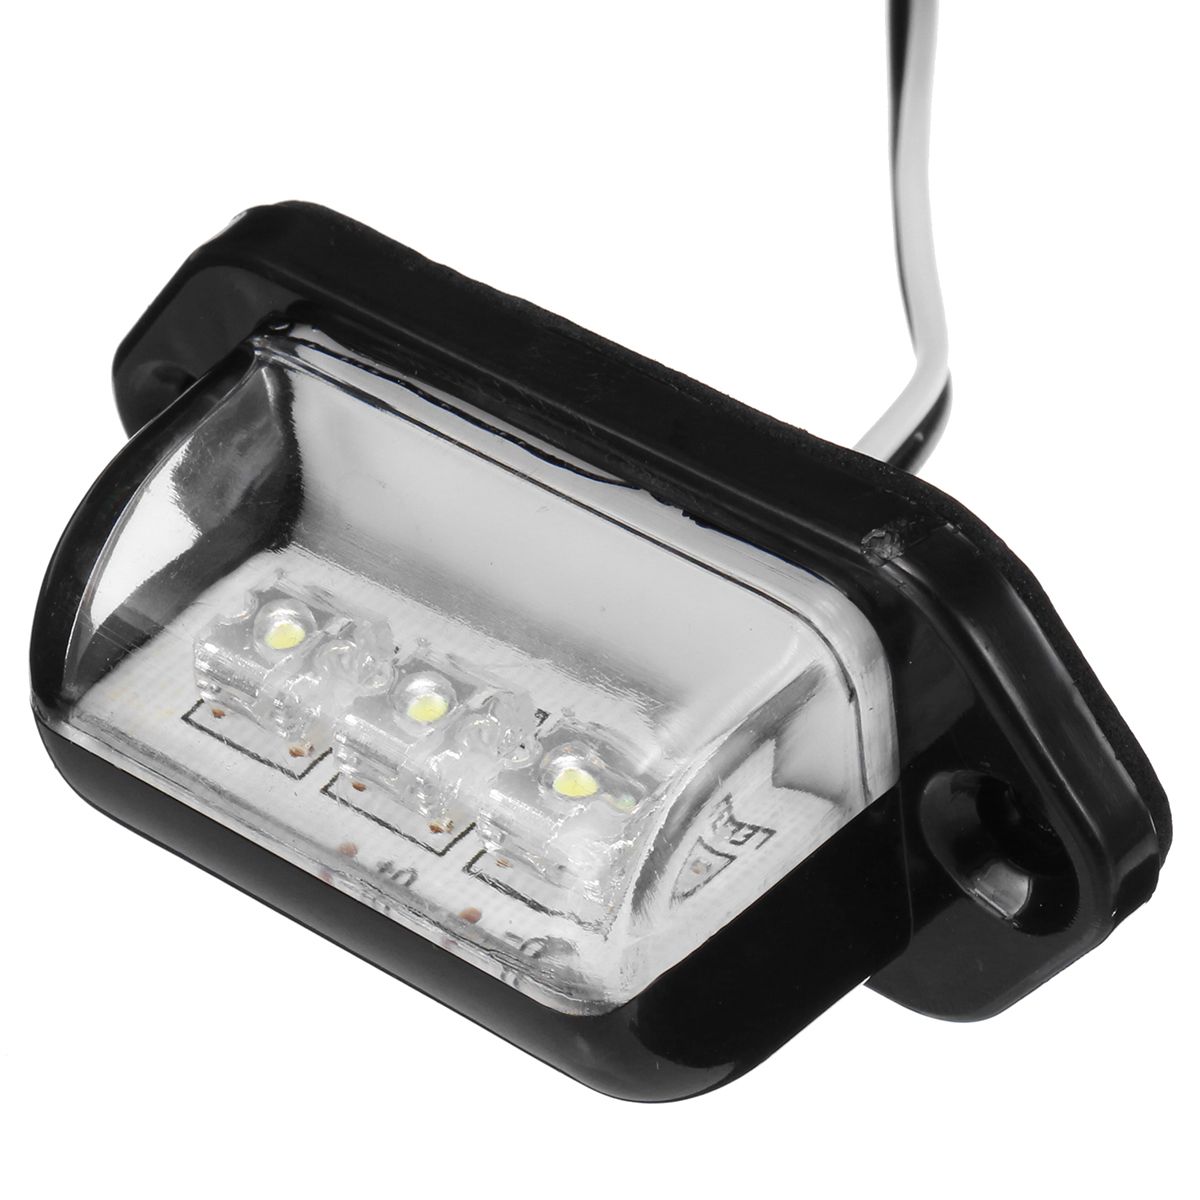 LED-License-Number-Plate-Lights-Lamp-10-30V-White-1PCS-For-Car-Truck-Tail-Trailer-958678